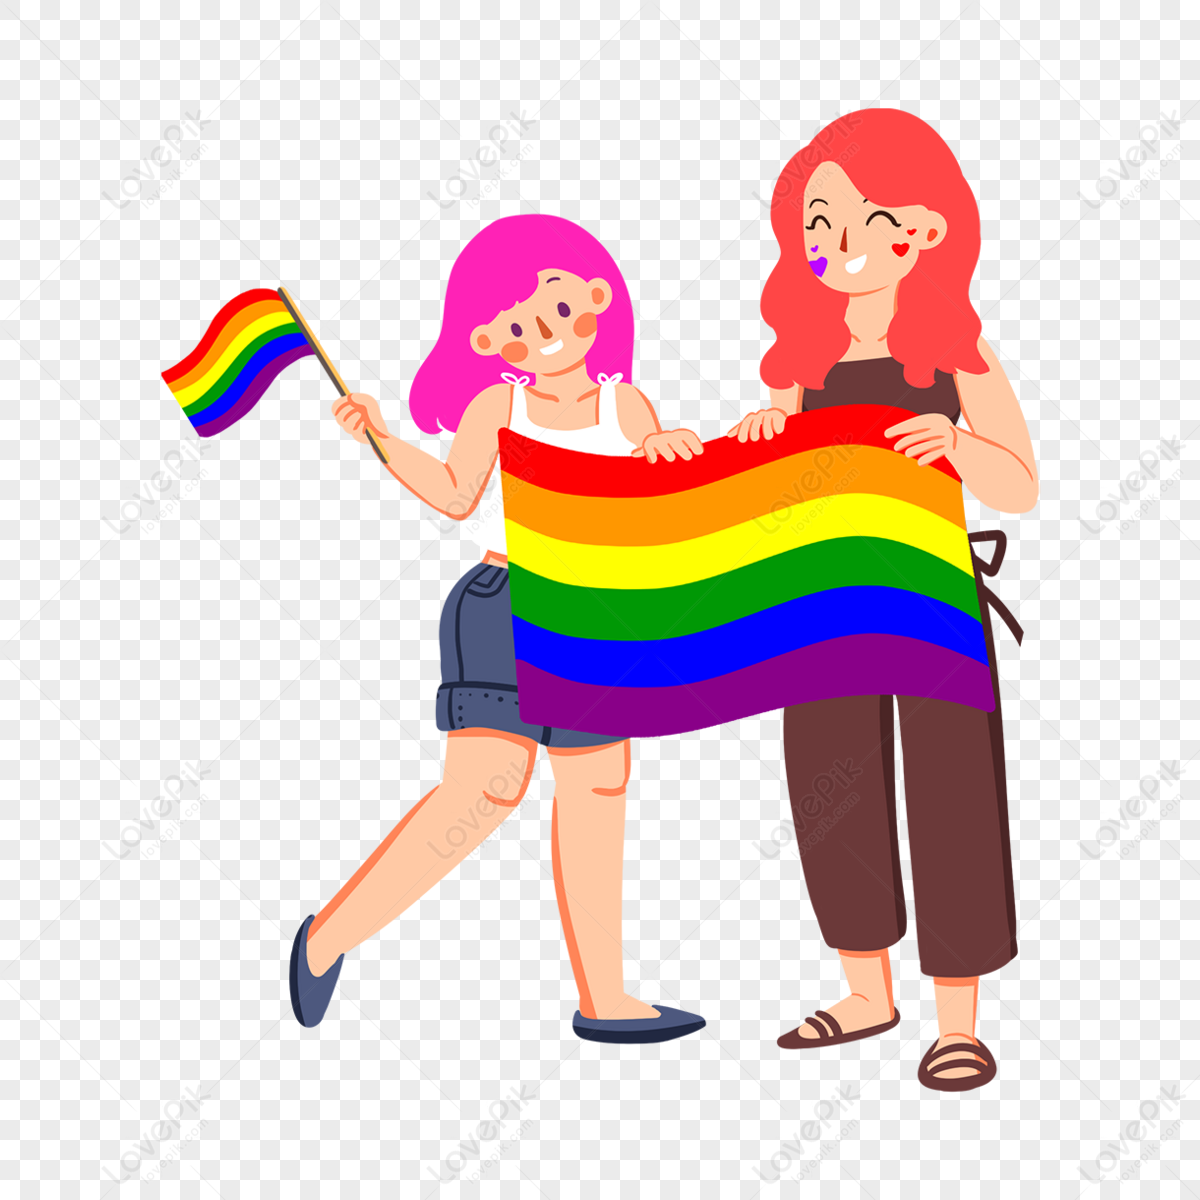 Pride Wallpaper Images - Free Download on Freepik